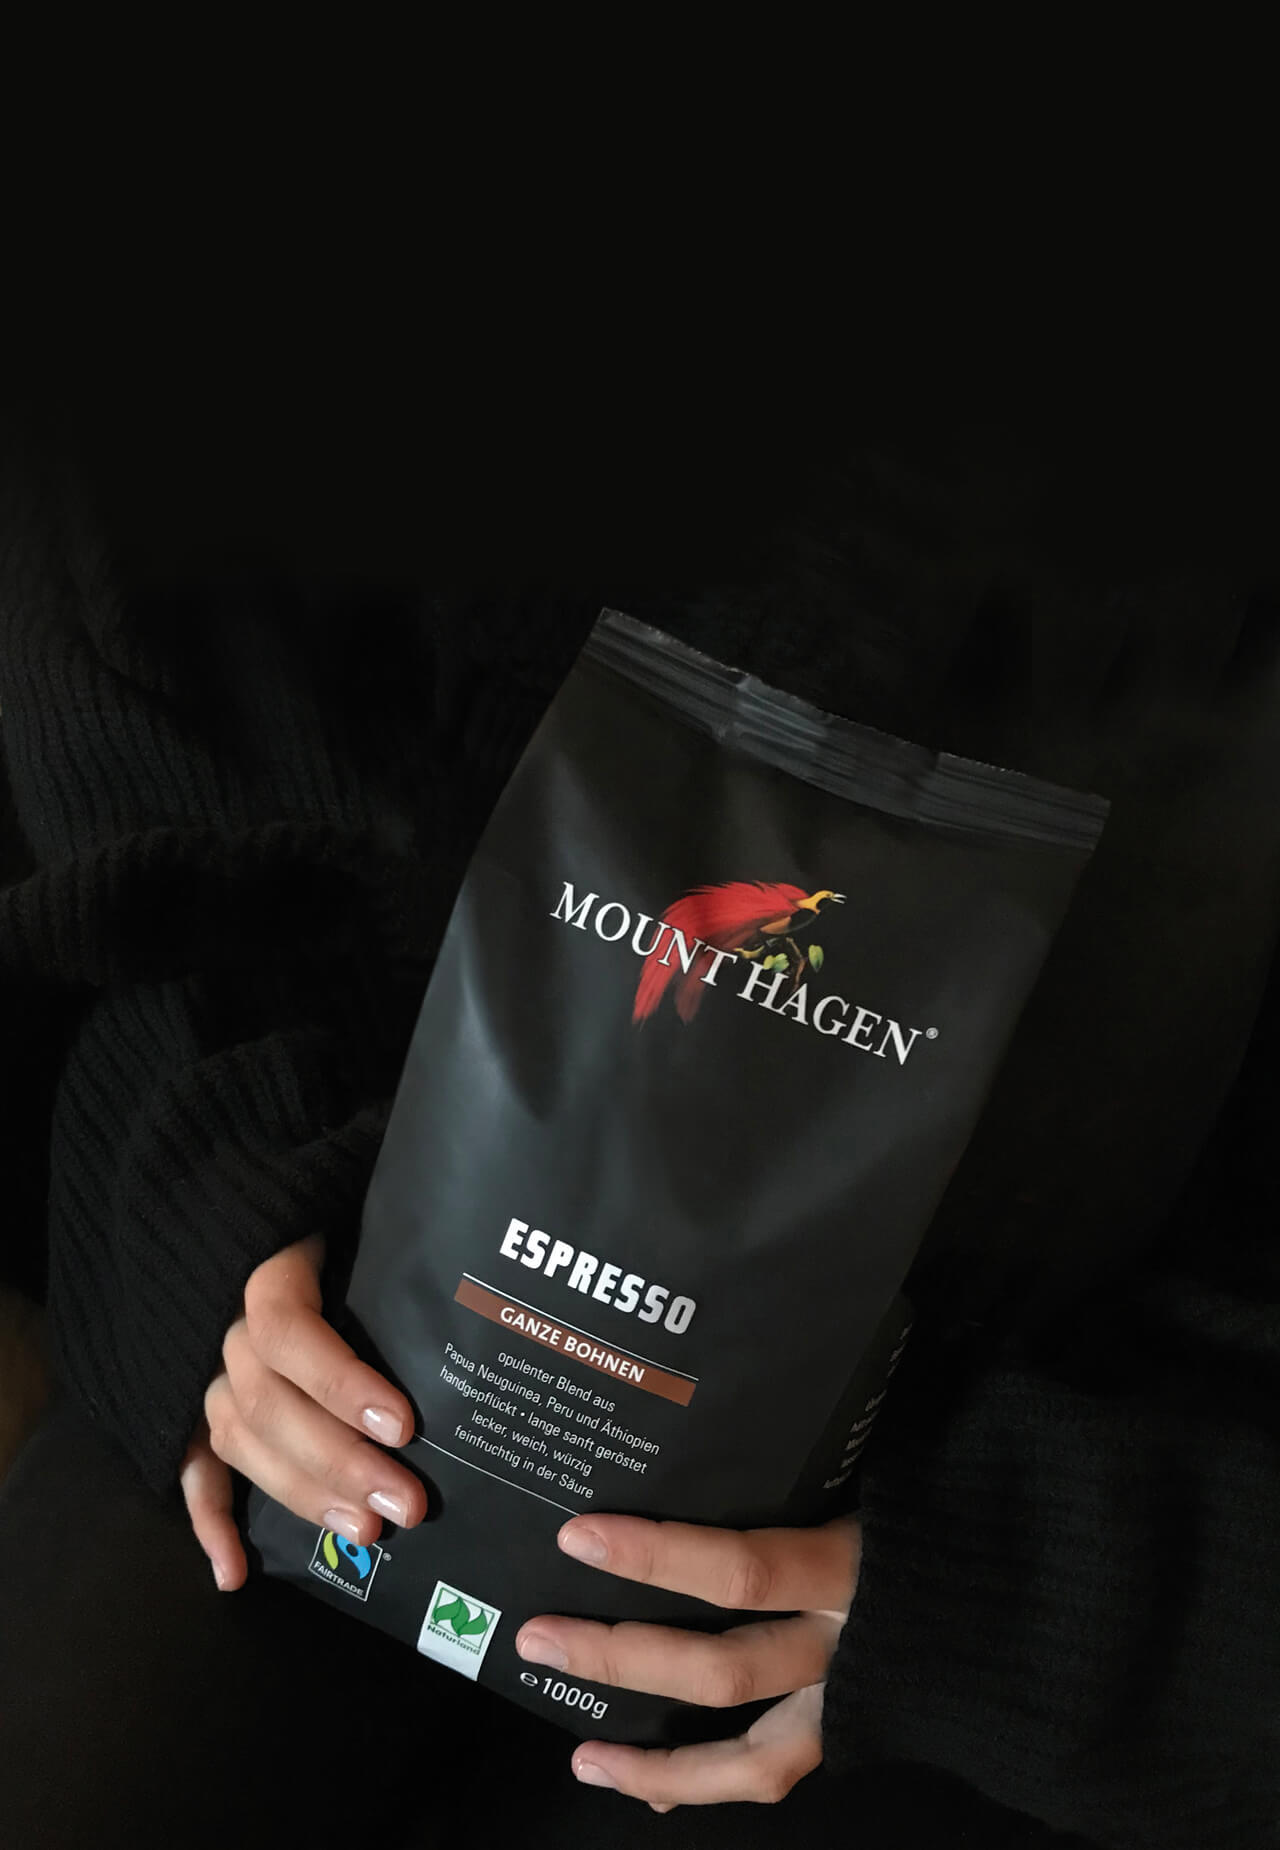 Mount Hagen Mitarbeiter des Monats: Espresso, ganze Bohne